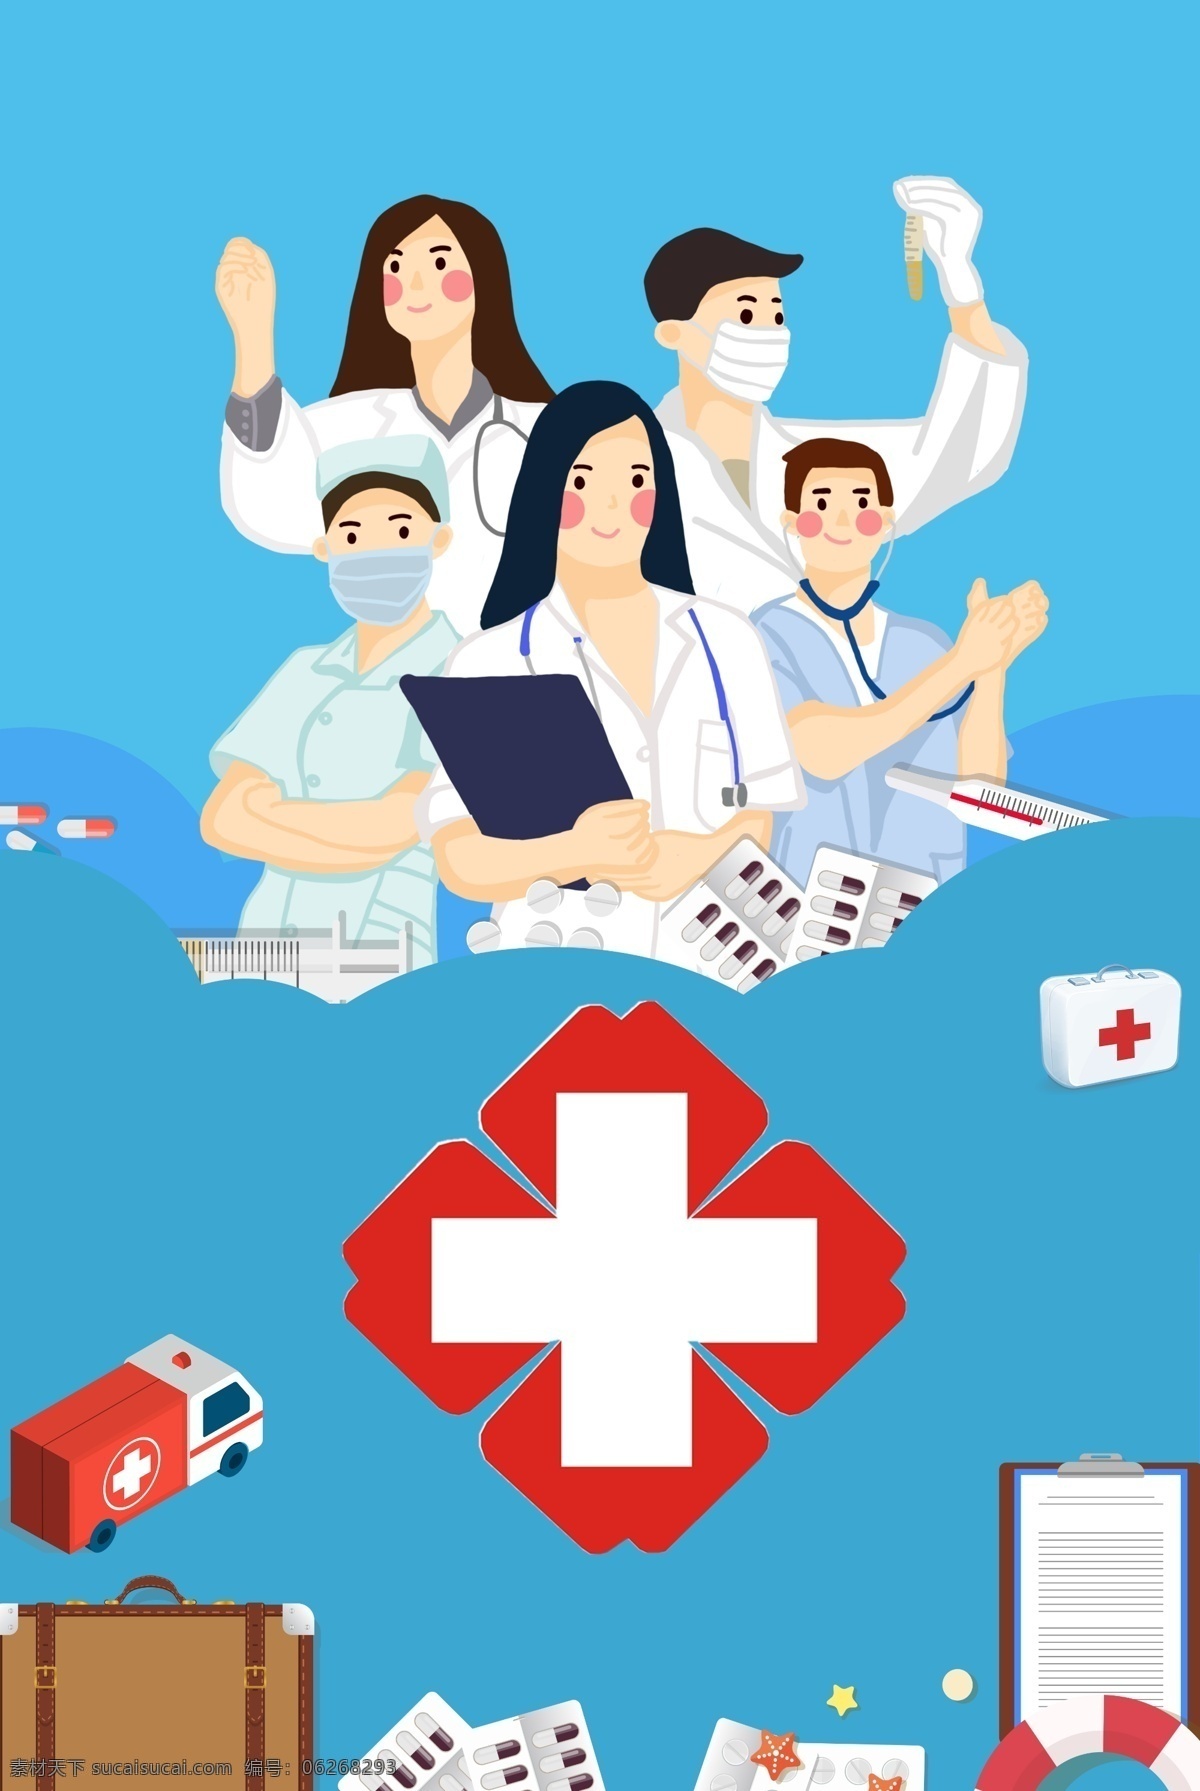 世界 急救 日 宣传海报 世界急救日 宣传 红十字 医学元素 医疗 医生 救护车 病例